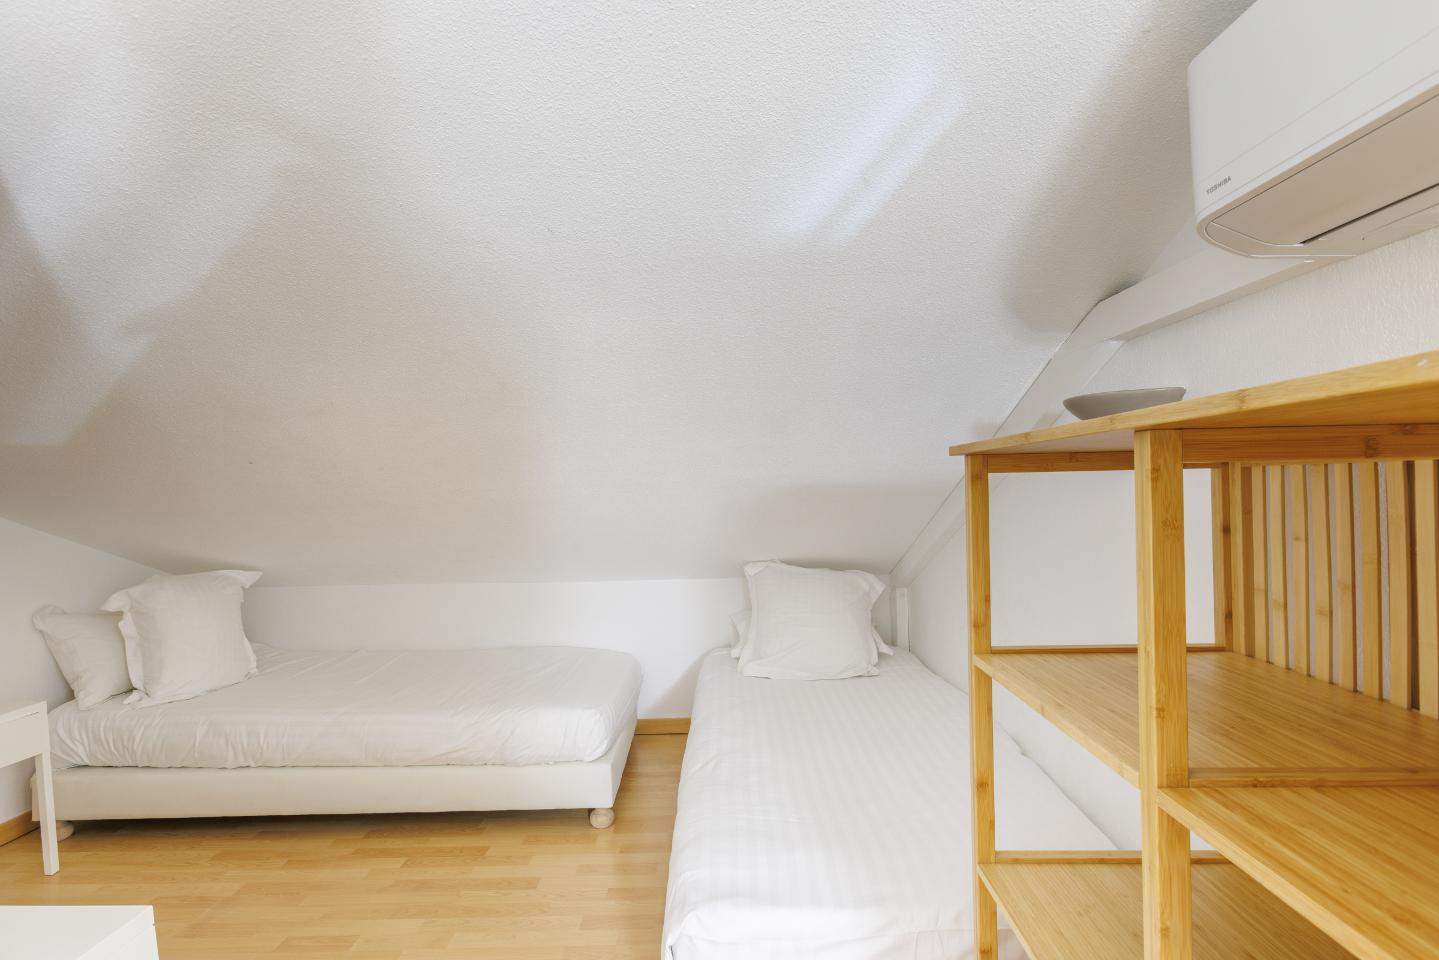 Logement GreenGo: Appartement 4 pièces - 66m² - Jardinet avec pergola vue lauriers - Image 6